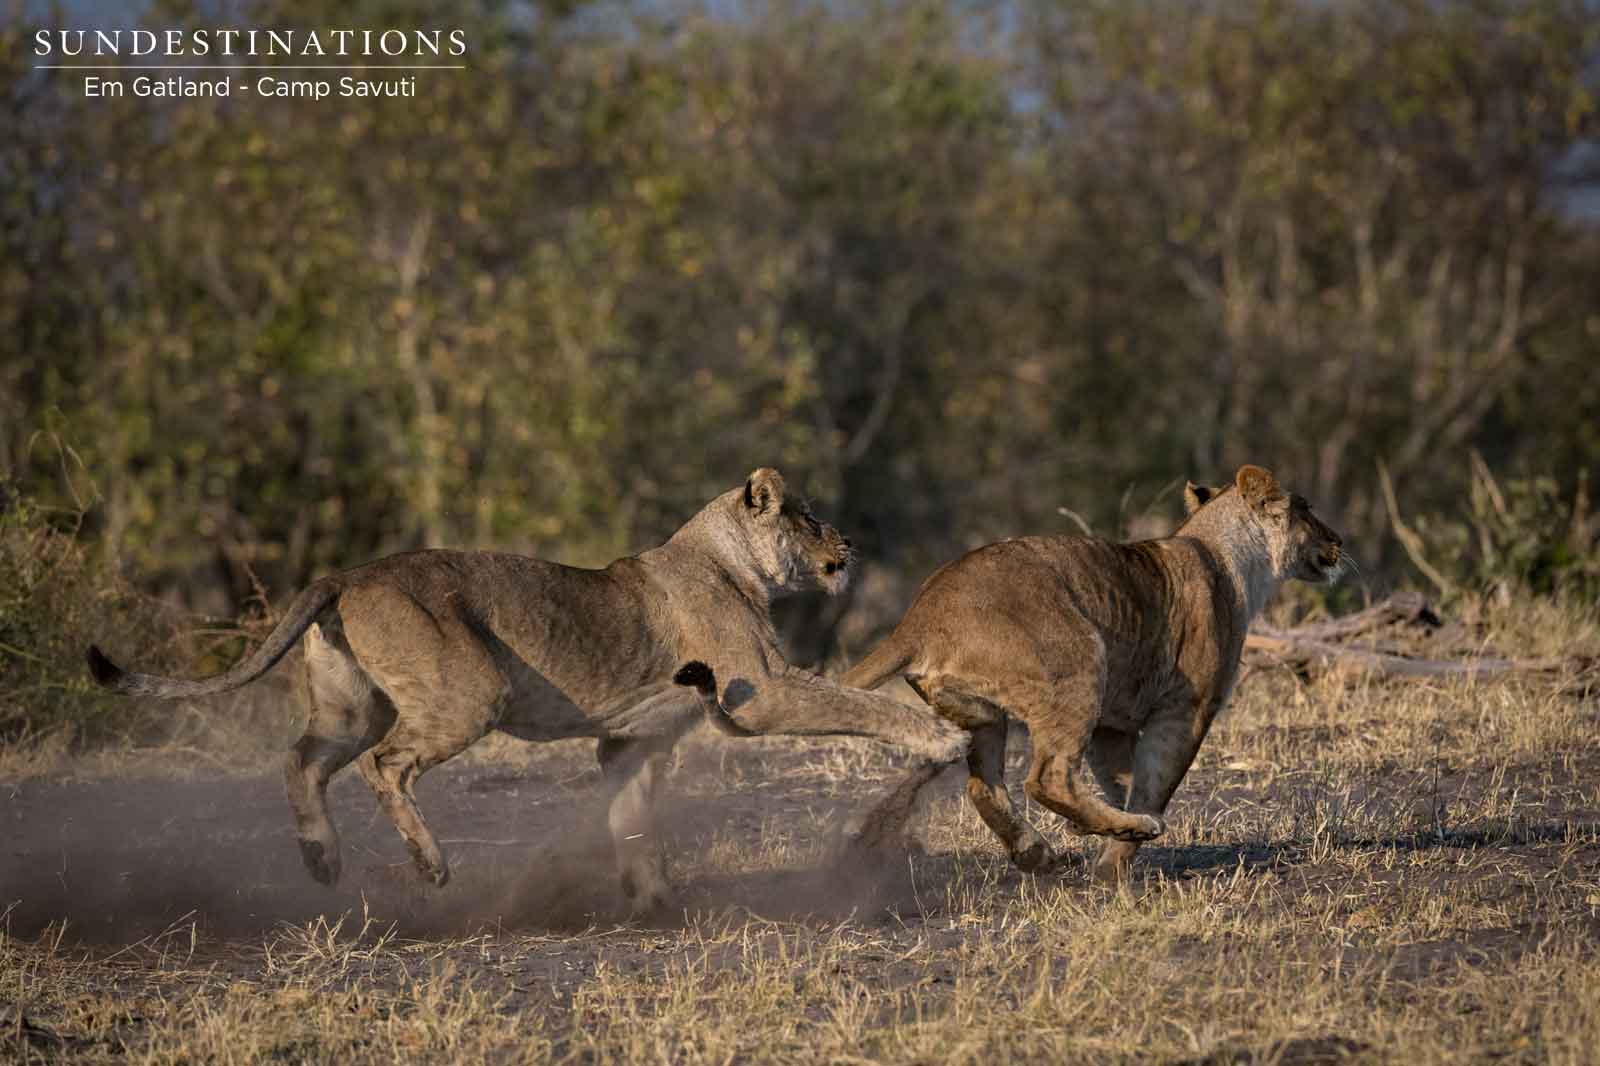 Marsh Pride of Lions in Savuti